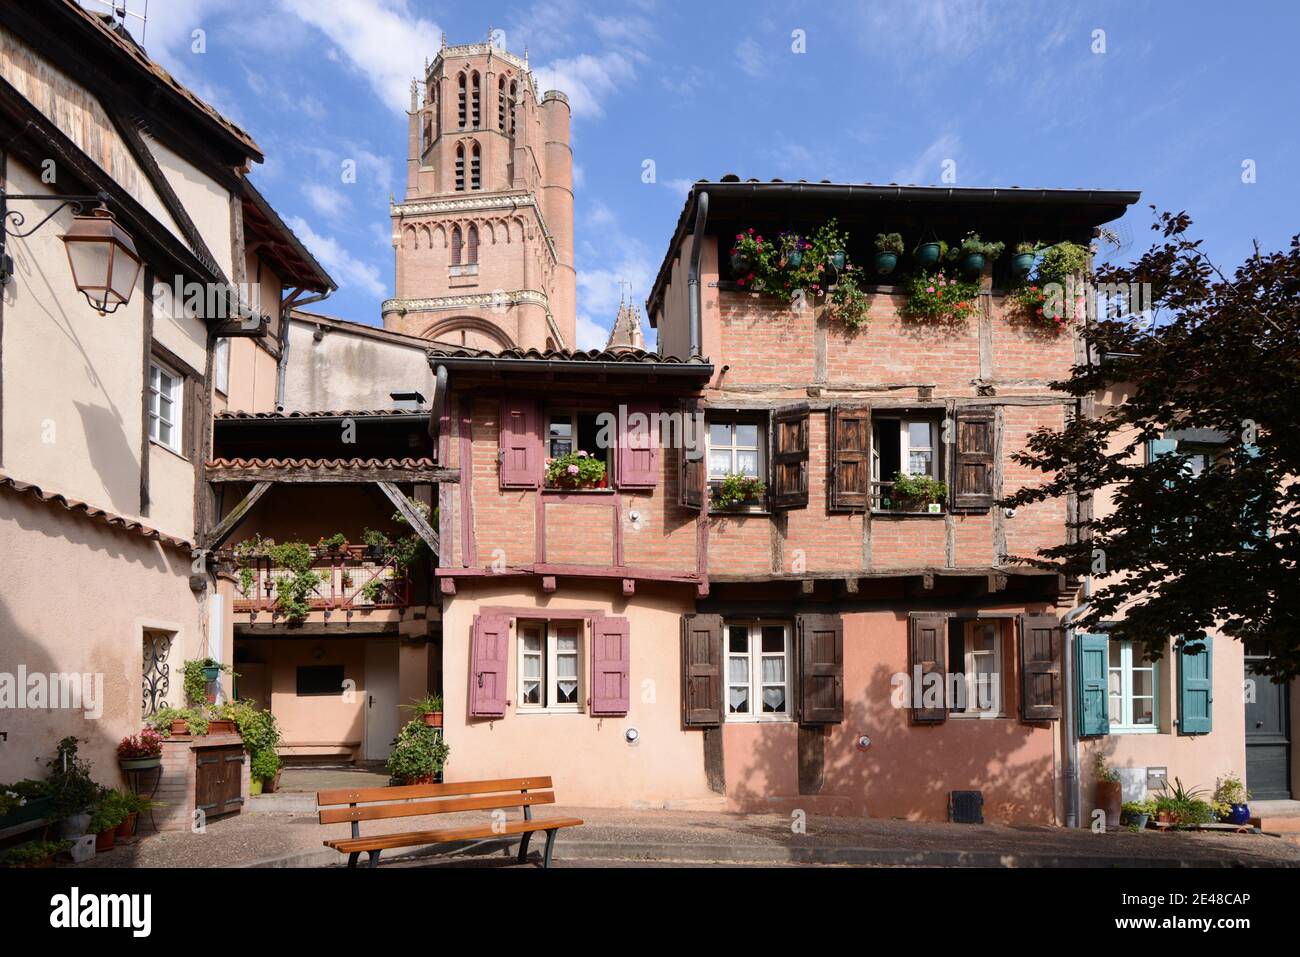 Glockenturm der Saint Cecilia Kathedrale Alte Stadthäuser & Platz in Die Altstadt oder das historische Viertel von Albi Tarn Frankreich Stockfoto